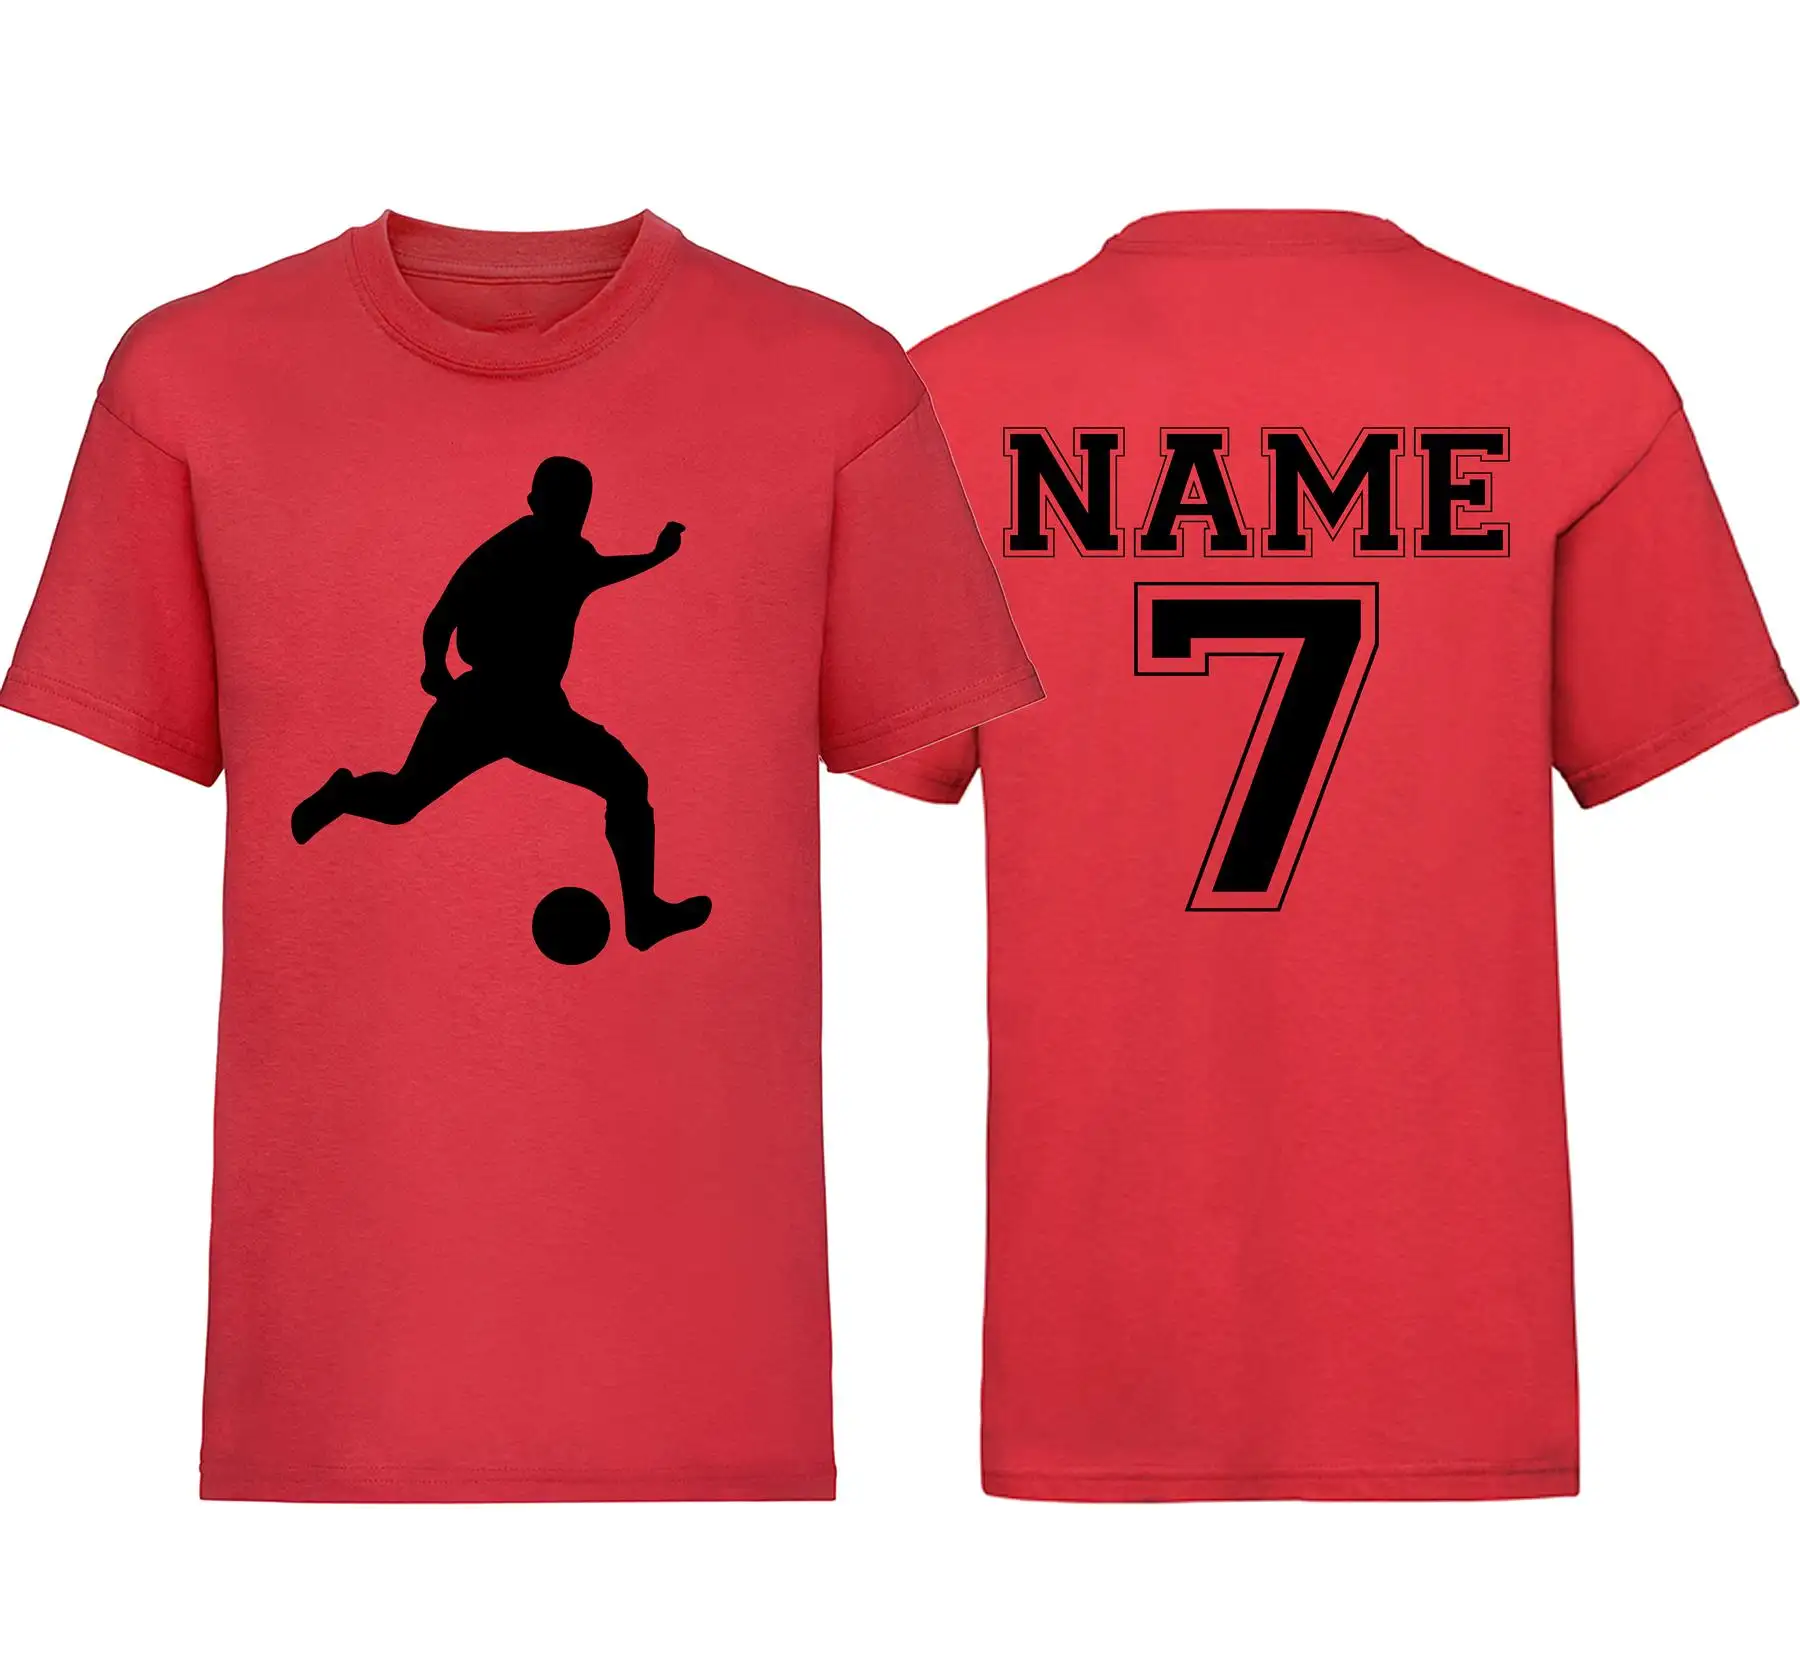 Kaus pola sepak bola dewasa pribadi pakaian olahraga nama kustom seragam sepak bola kebugaran pria Dropship grosir kaus